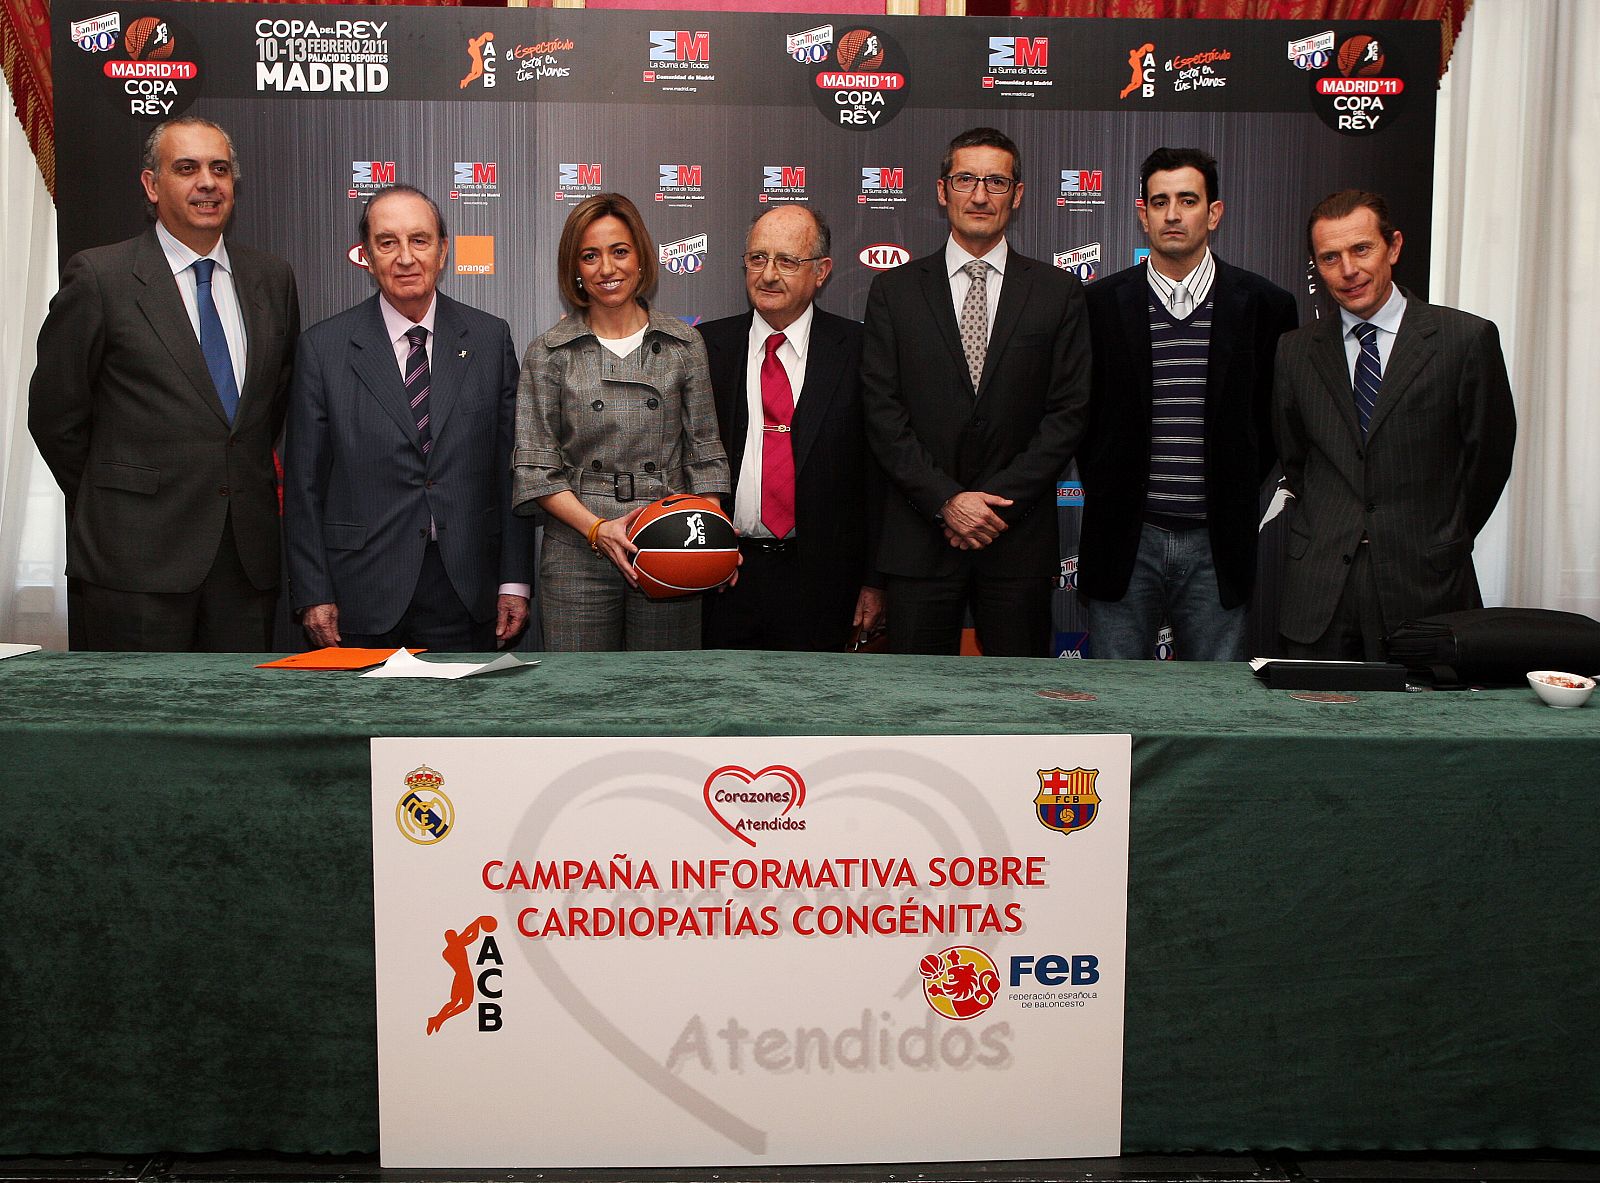 La ministra de Defensa, Carme Chacón, junto con representantes de la ACB, la FEB, el F.C Barcelona, el Real Madrid y la Federación Nacional de Afectados por Cardiopatías Congénitas y Adquiridas